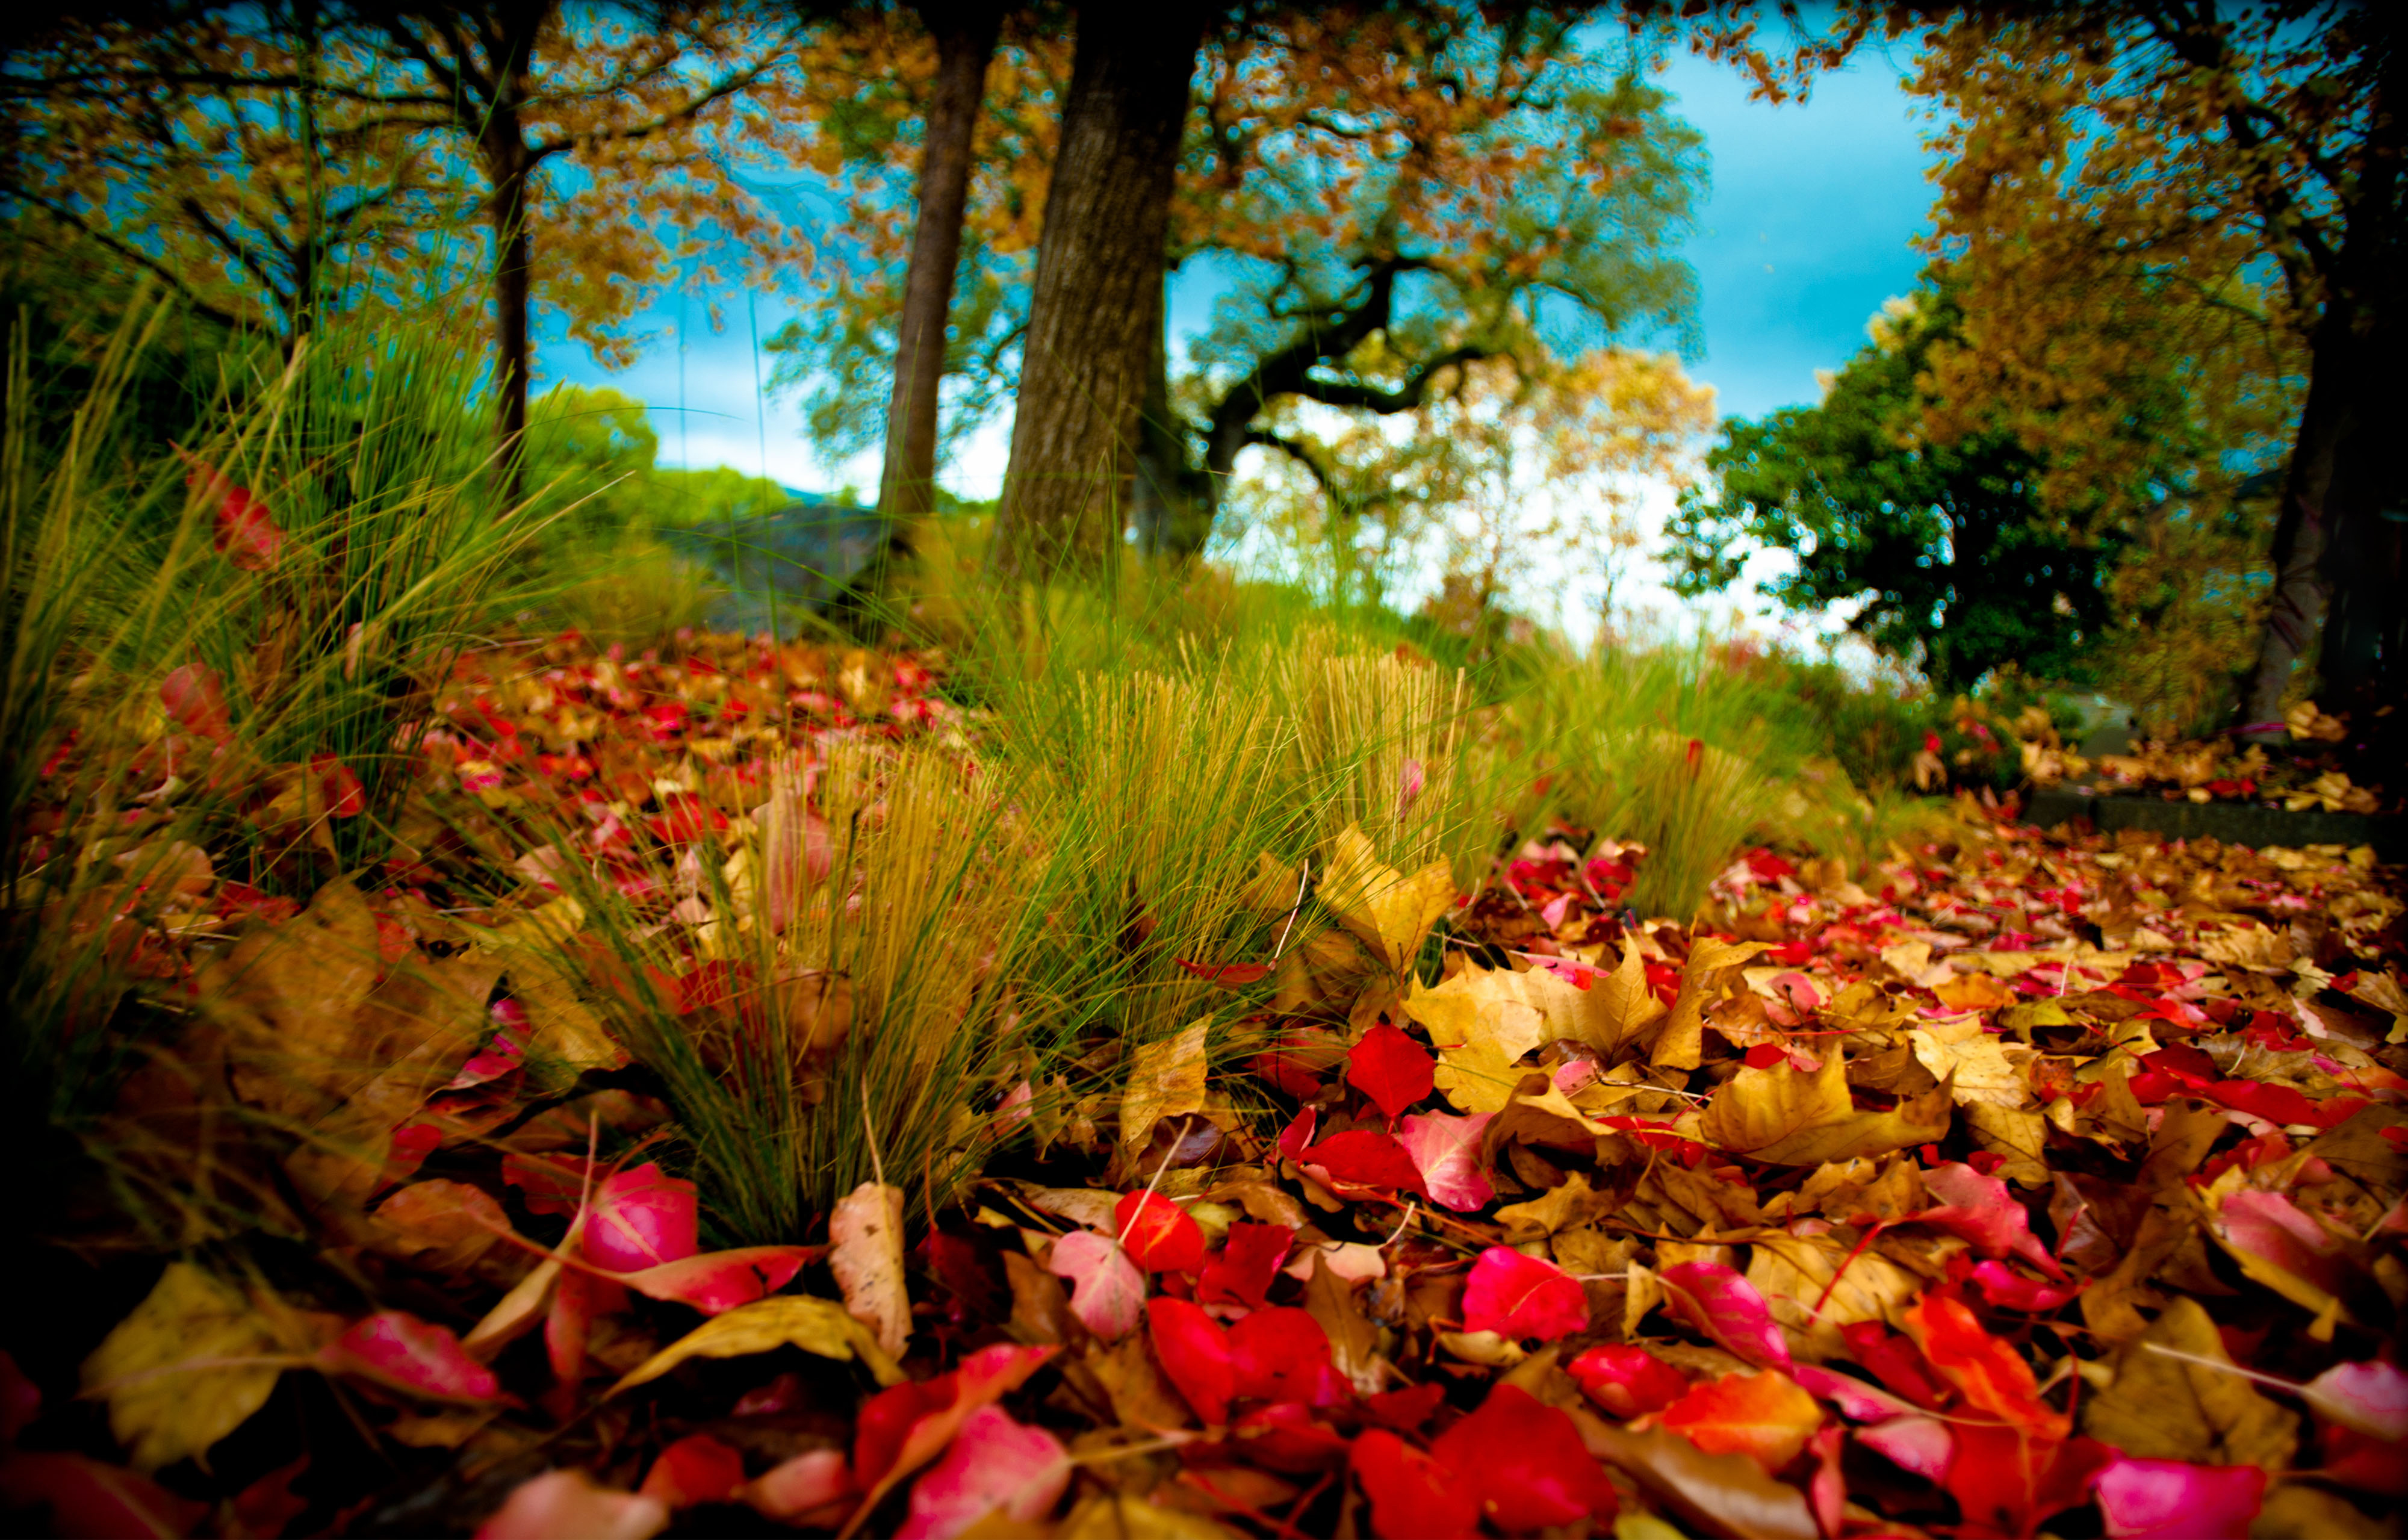 Картинки на сотку. Яркая природа. Природа осень. Осенние обои. Яркие краски природы.